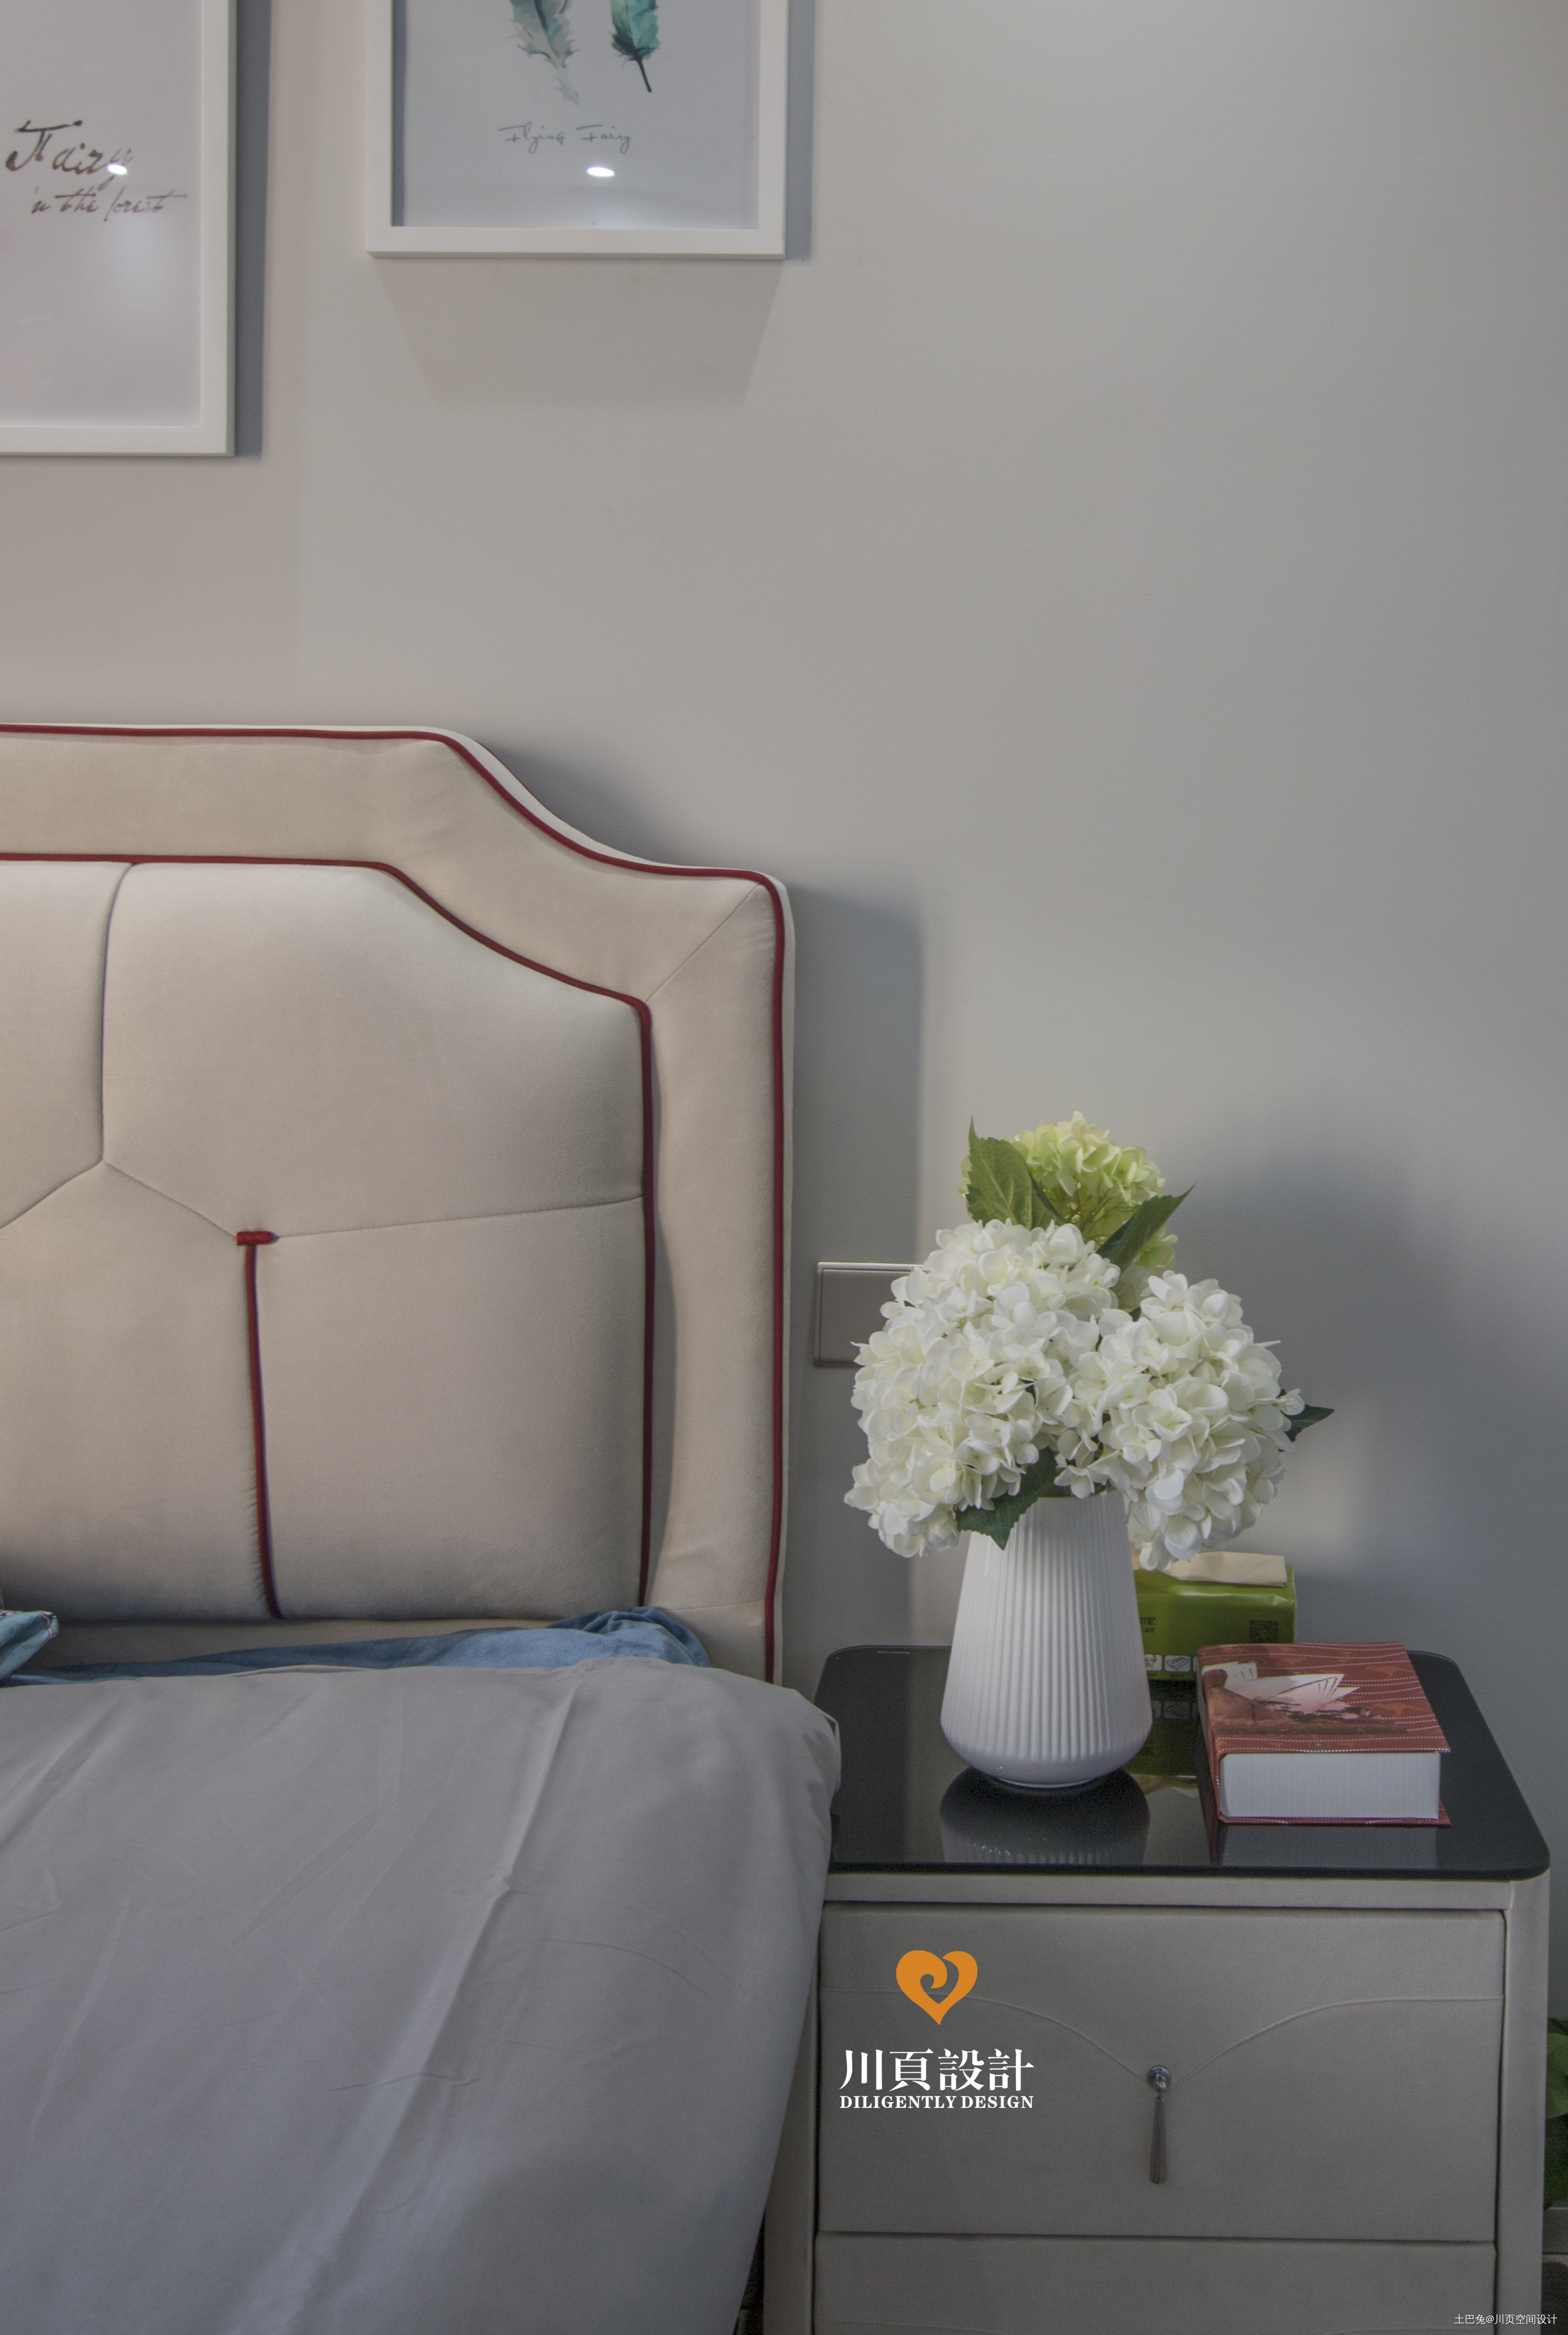 和谐安静的现代奢华现代简约卧室设计图片赏析